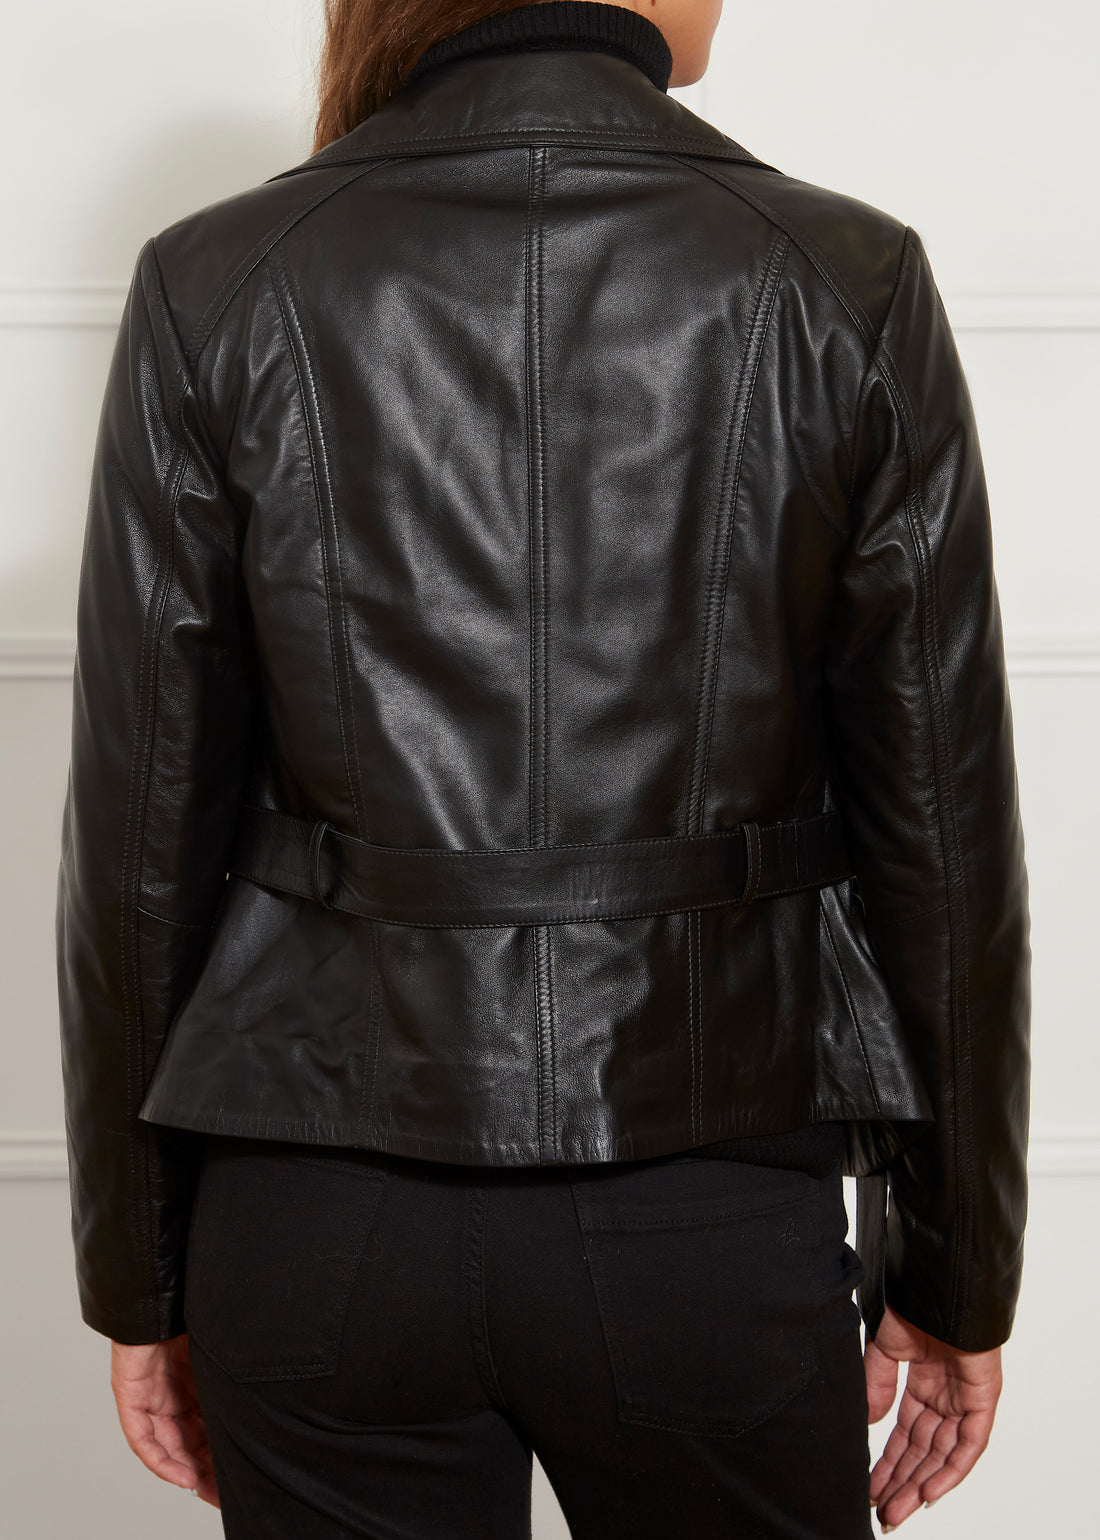 Black Leather Biker Jacket With Belt